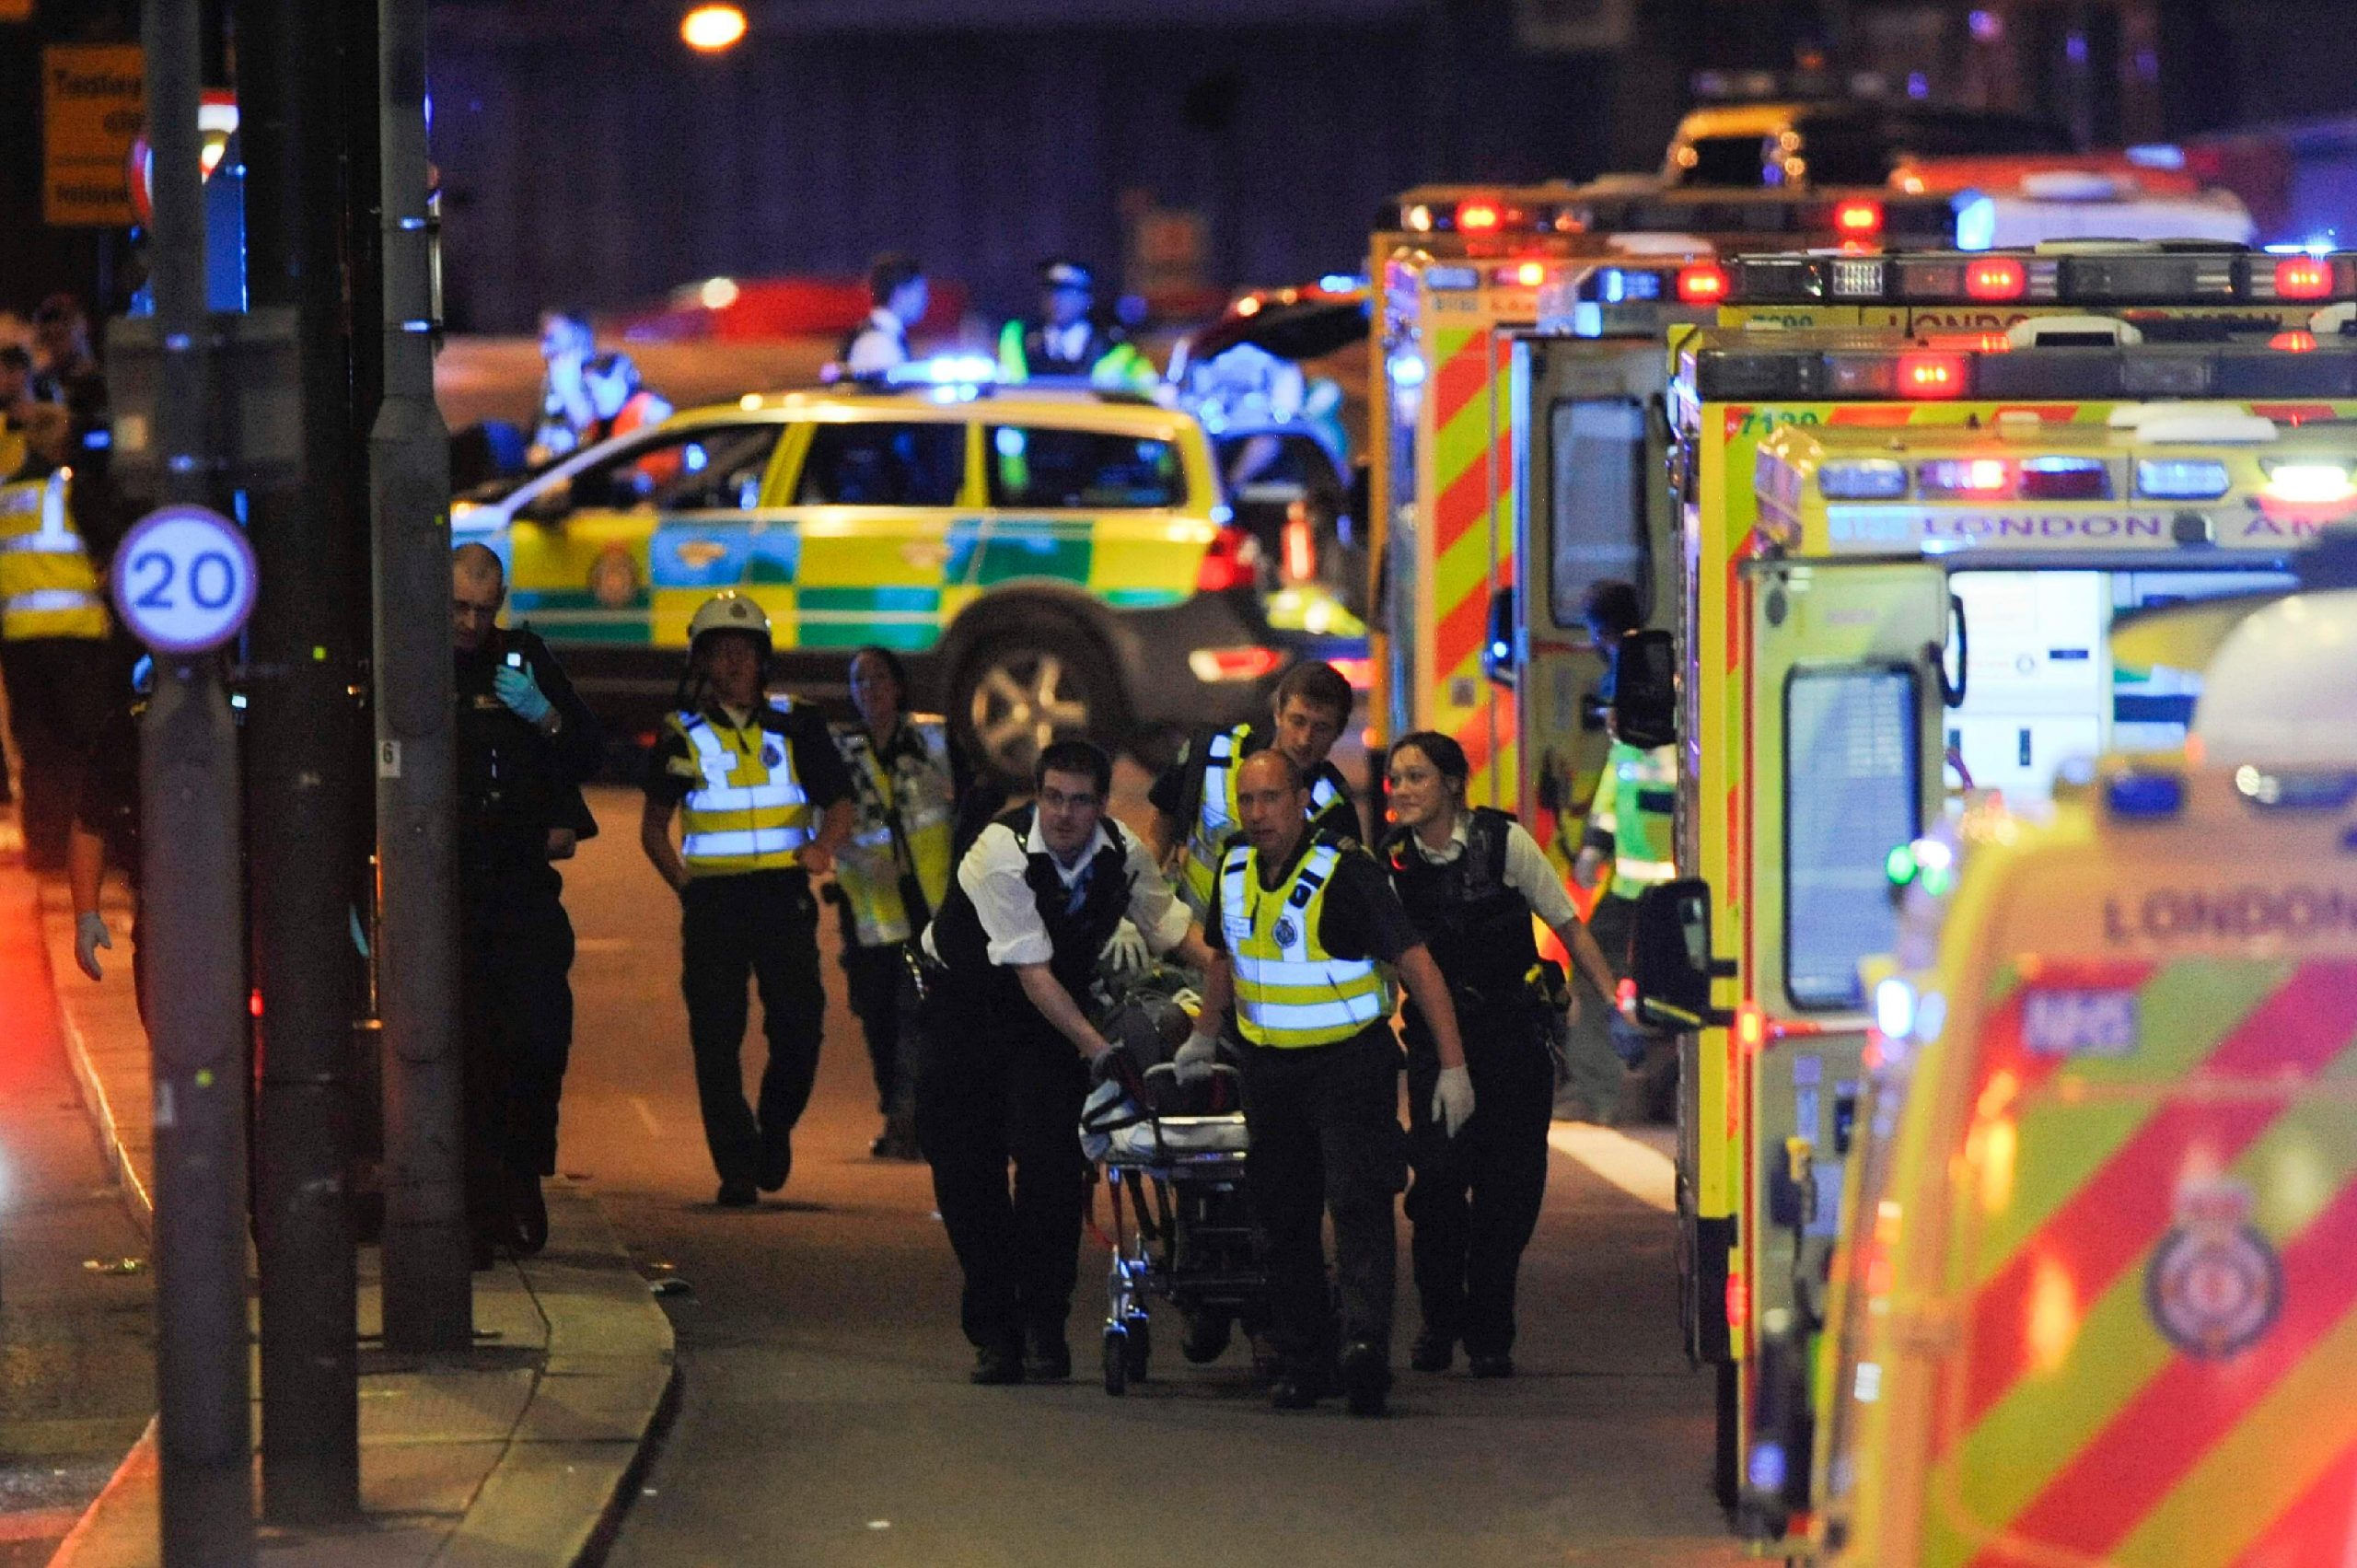 London Bridge Attack: British Police and MI5 Questioned